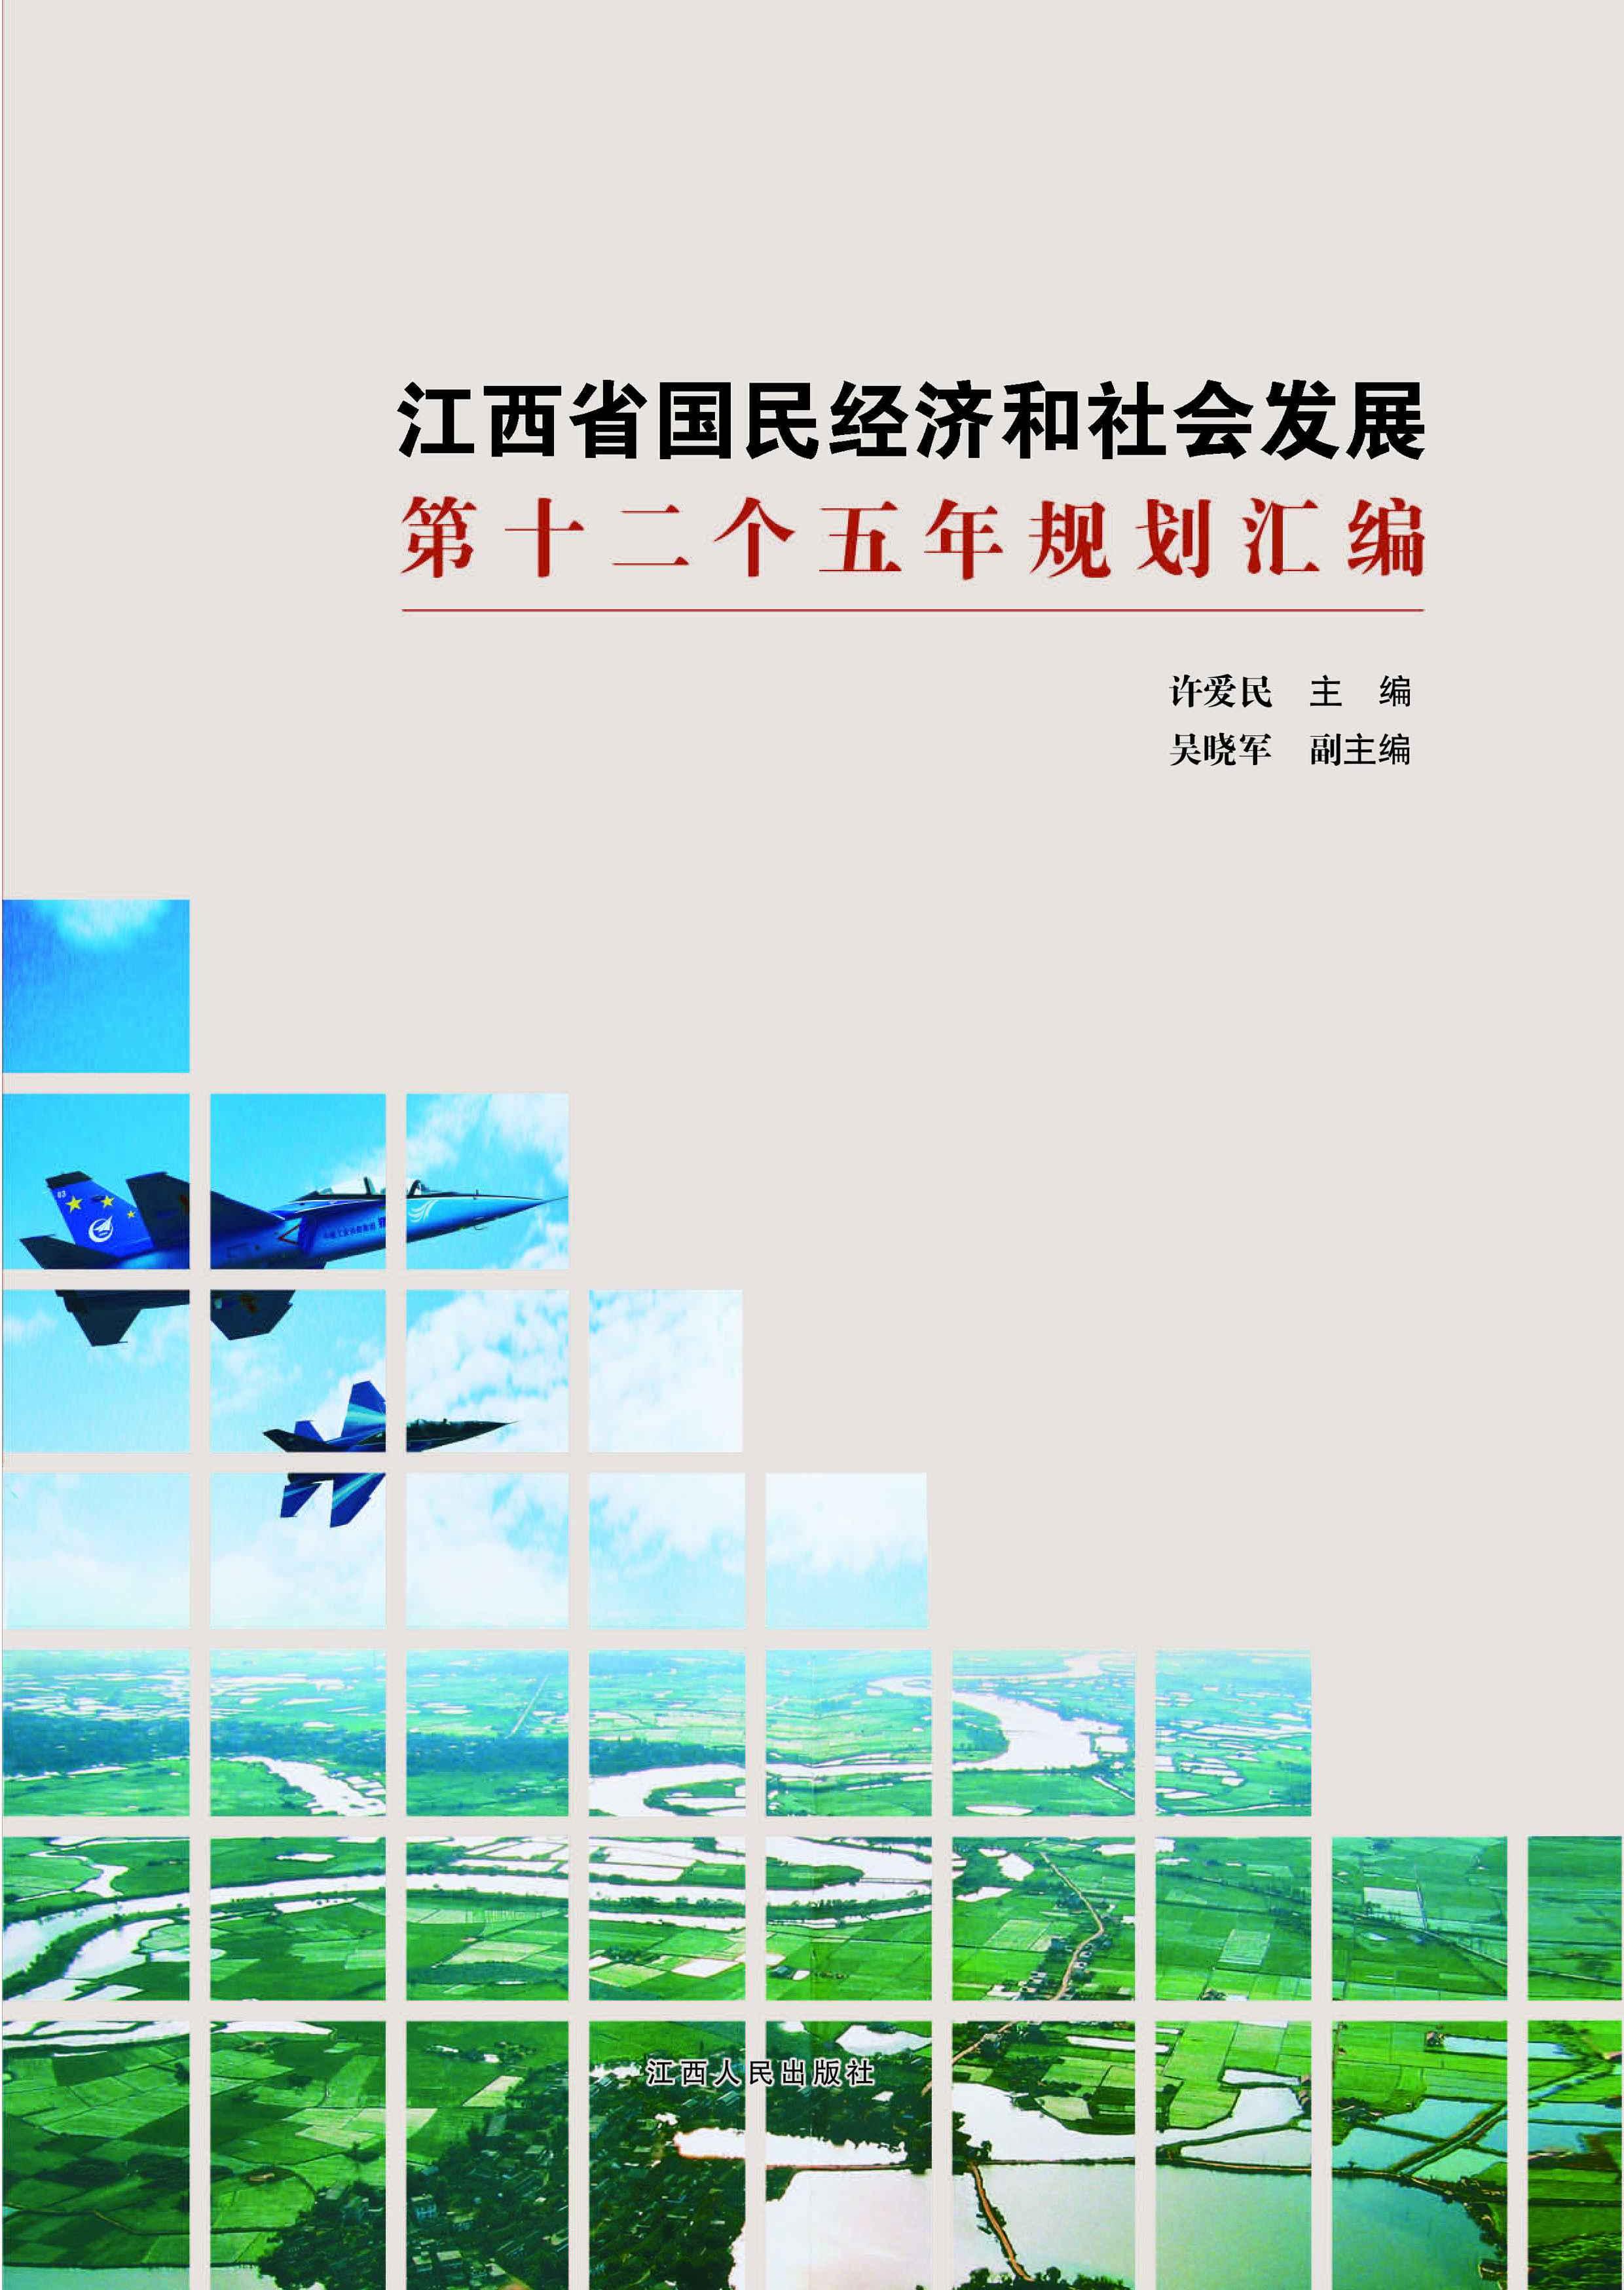 江西省国民经济和社会发展第十二个五年规划汇编